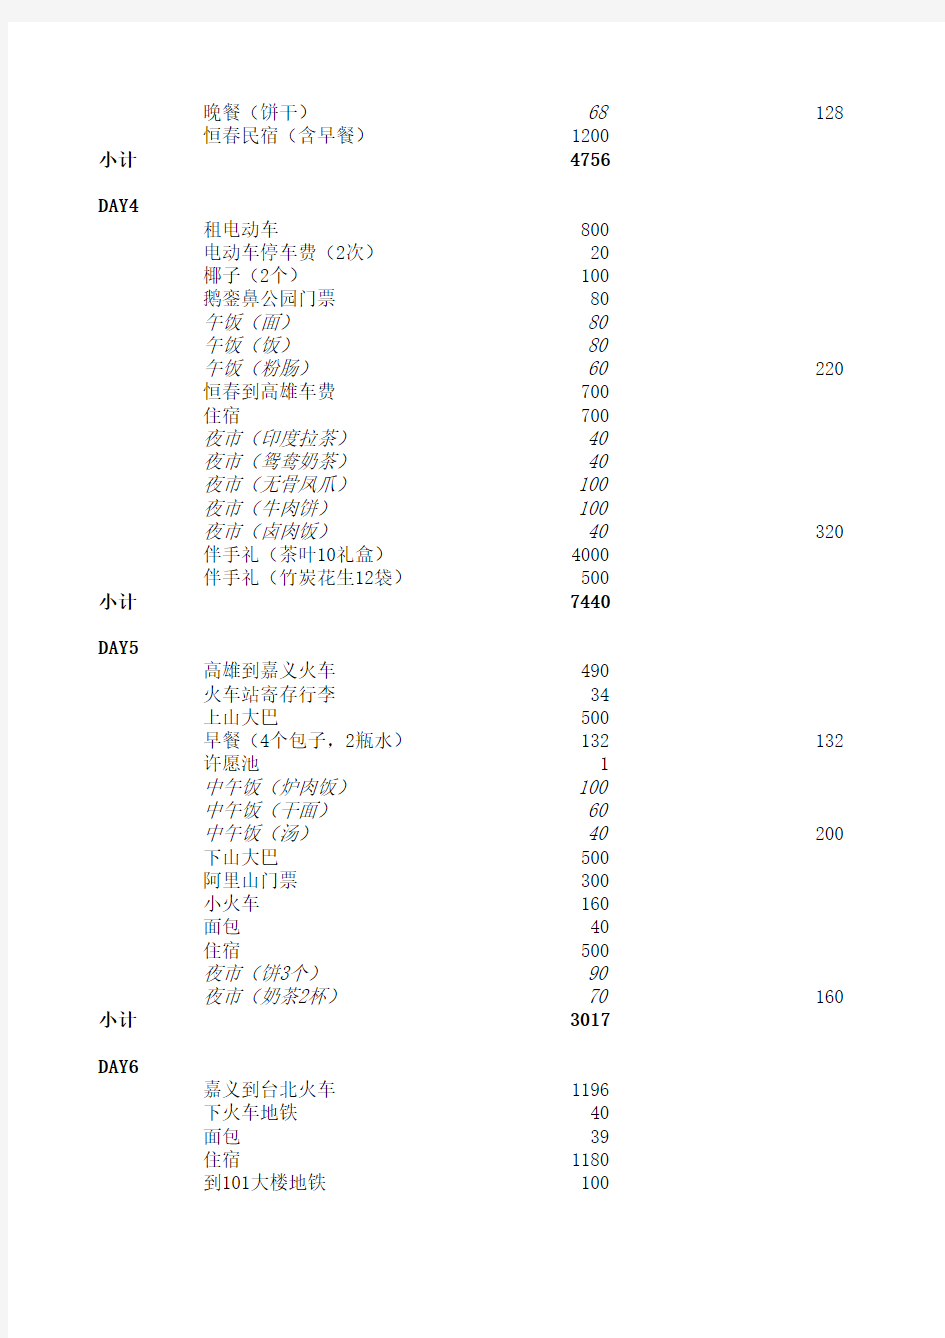 2013年台湾8天7夜(八天七夜)2人台湾自由行(个人游)花费清单(详单)